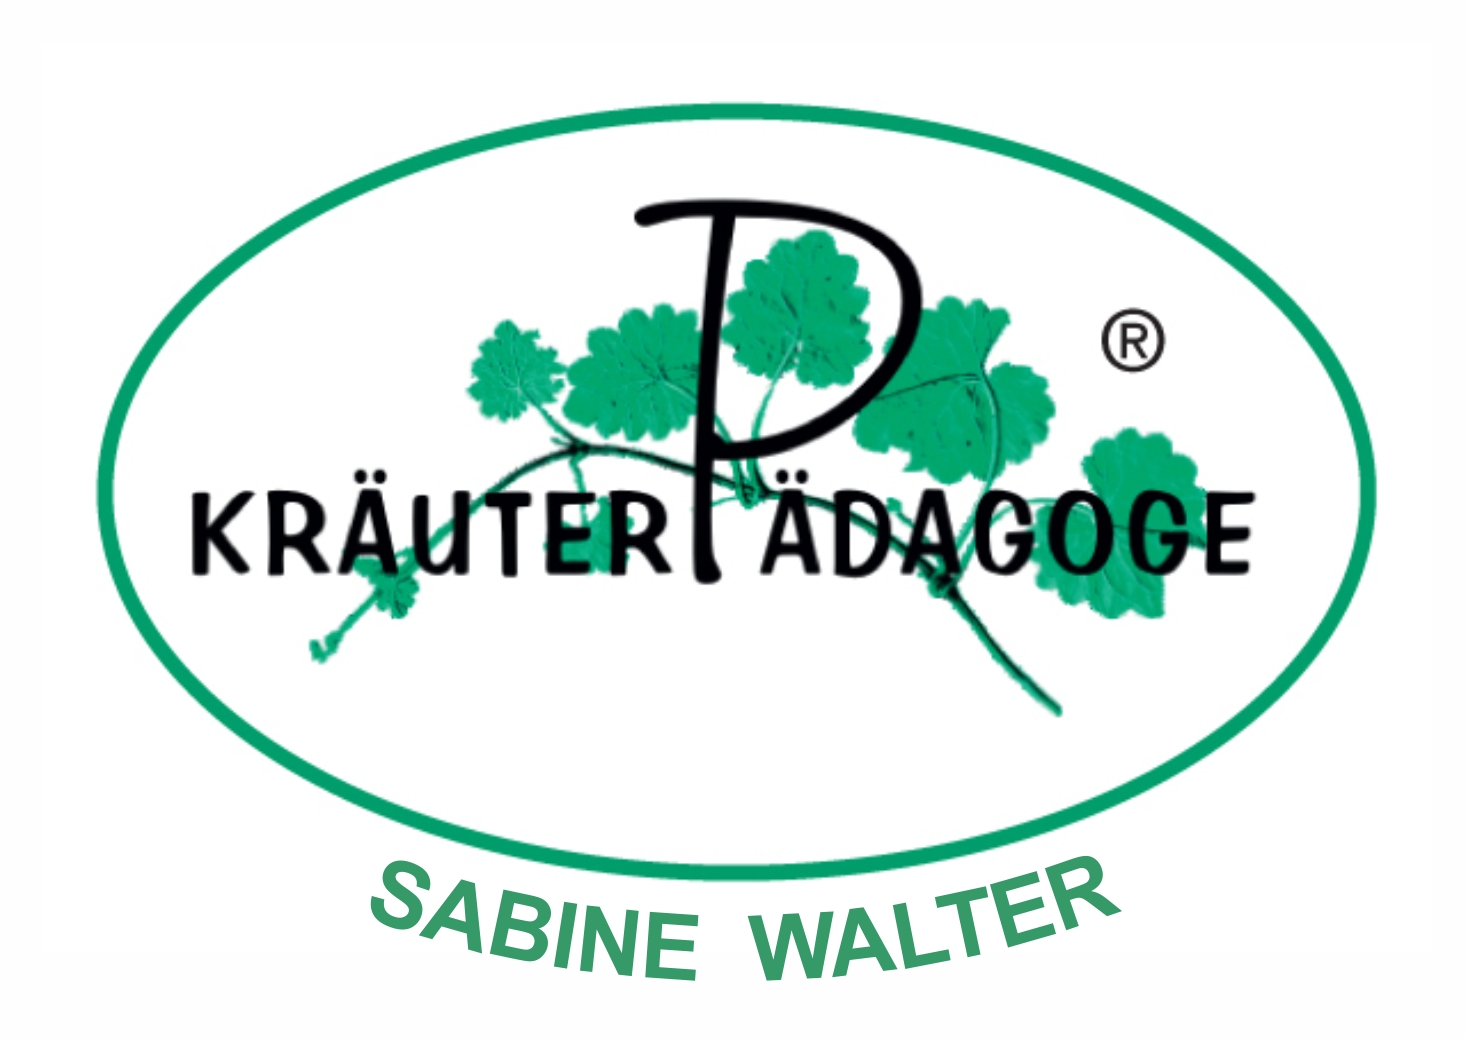 Kräuter Pädagoge Sabine Walter